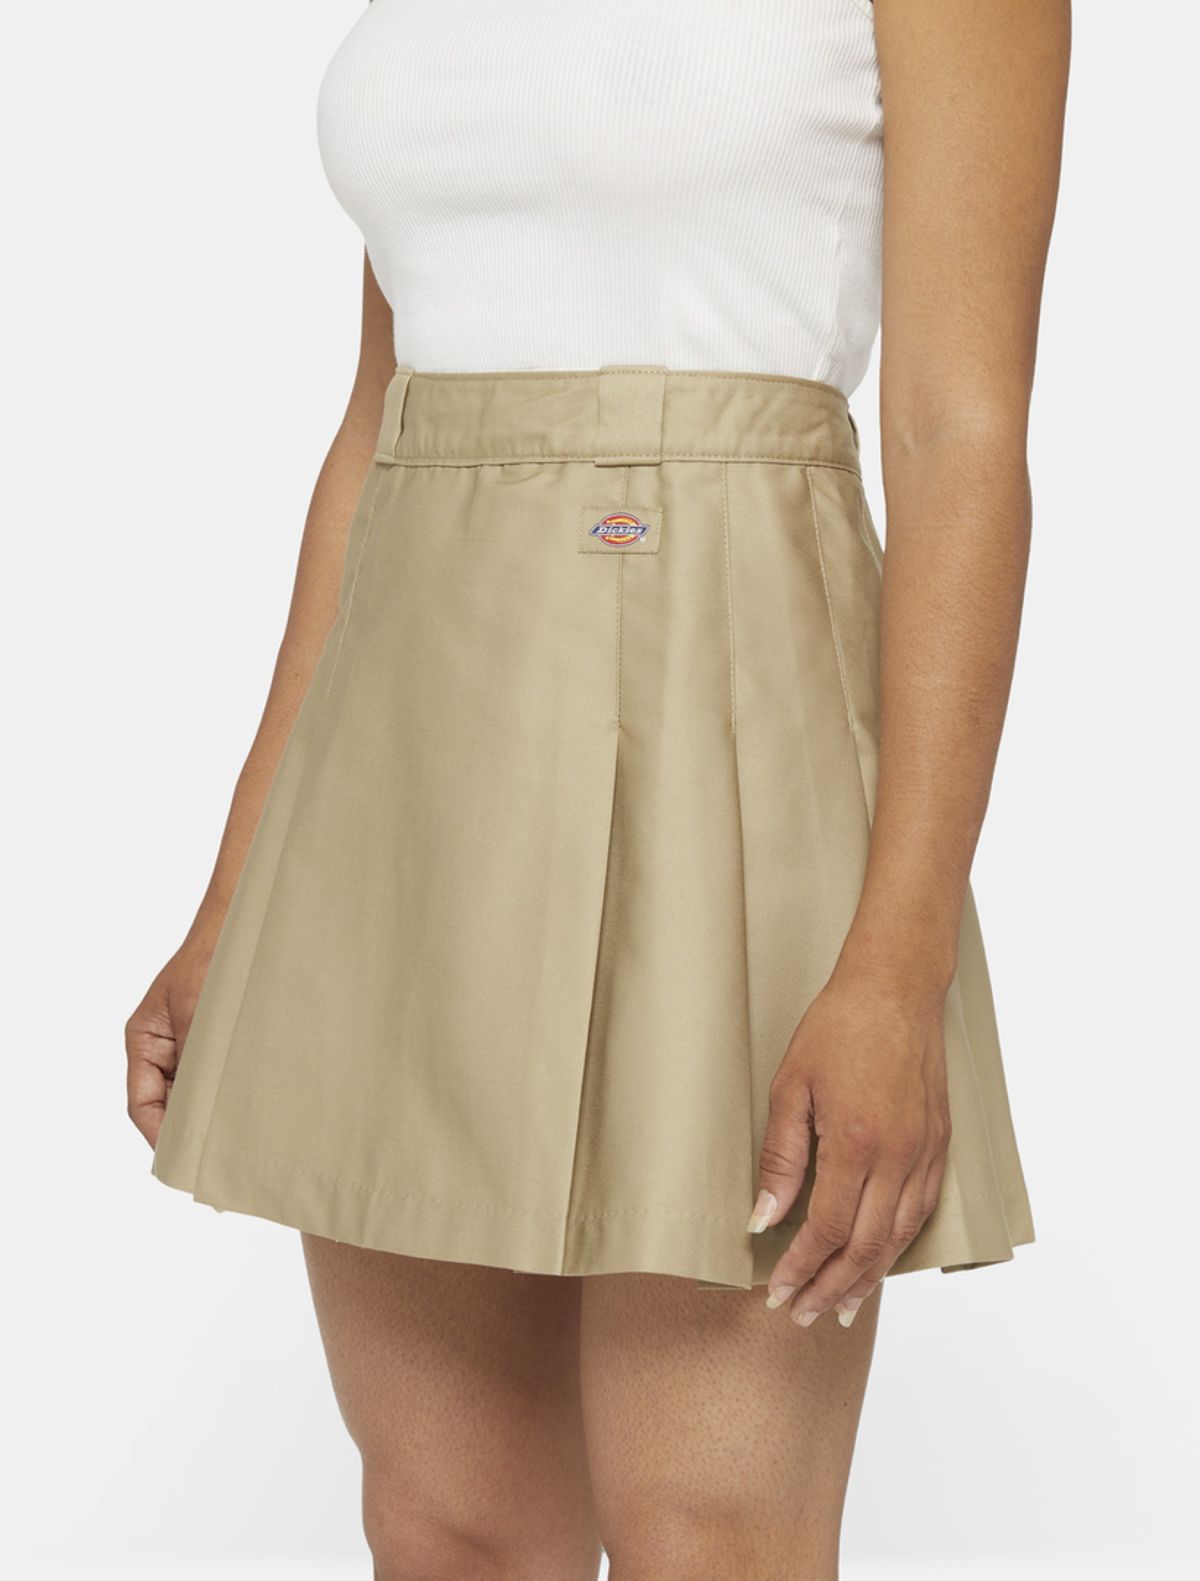  חצאית מיני עם לוגו של DICKIES